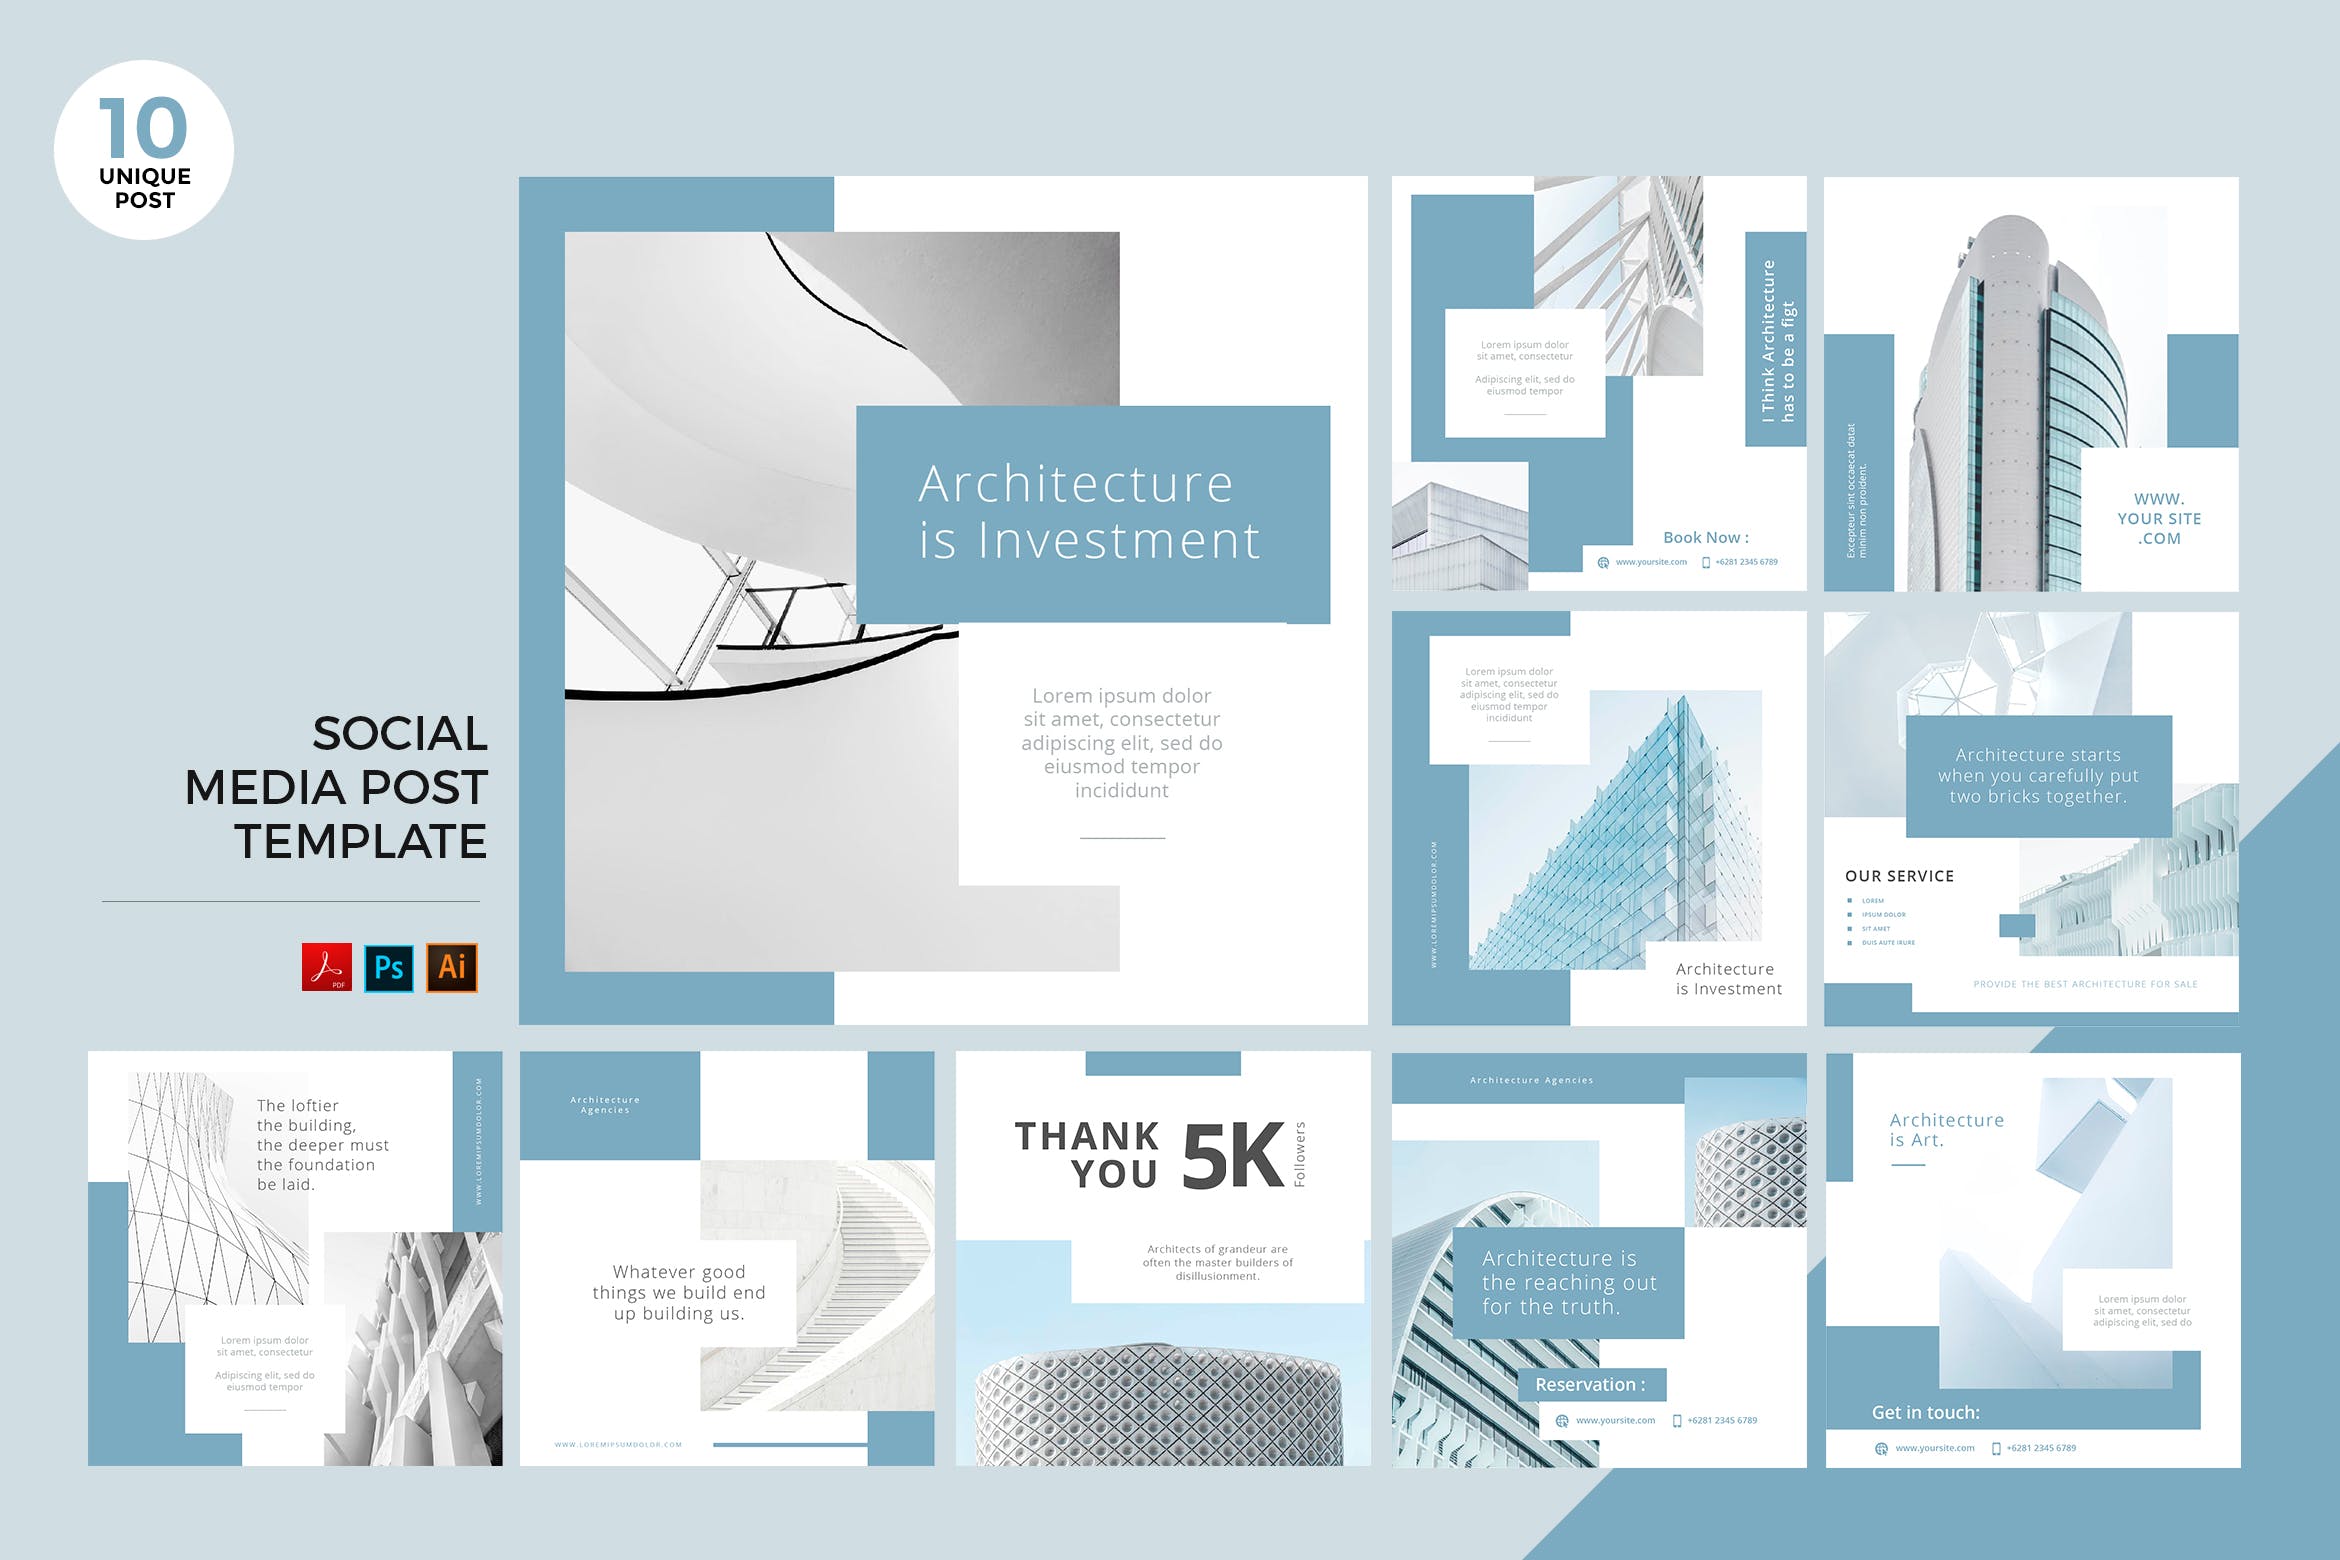 高端奢华建筑品牌社交媒体设计素材包 Architecture Social Media Kit PSD & AI Template插图